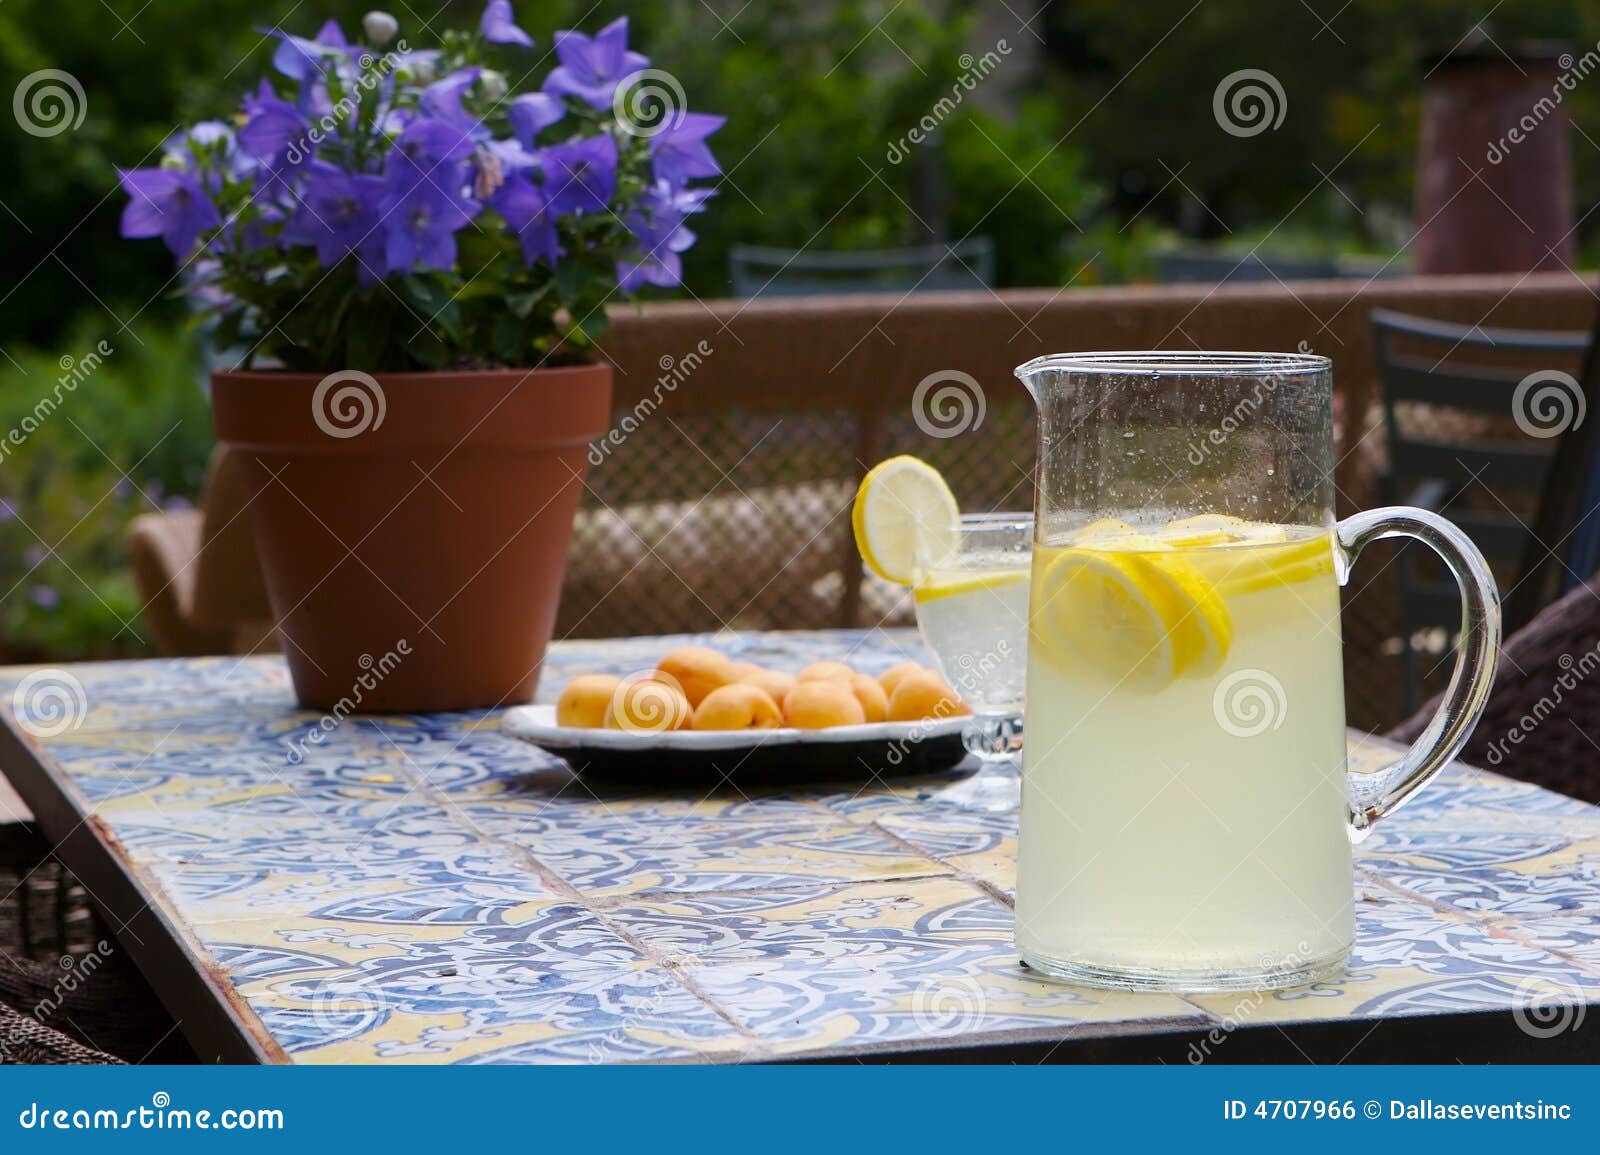 summertime lemonade